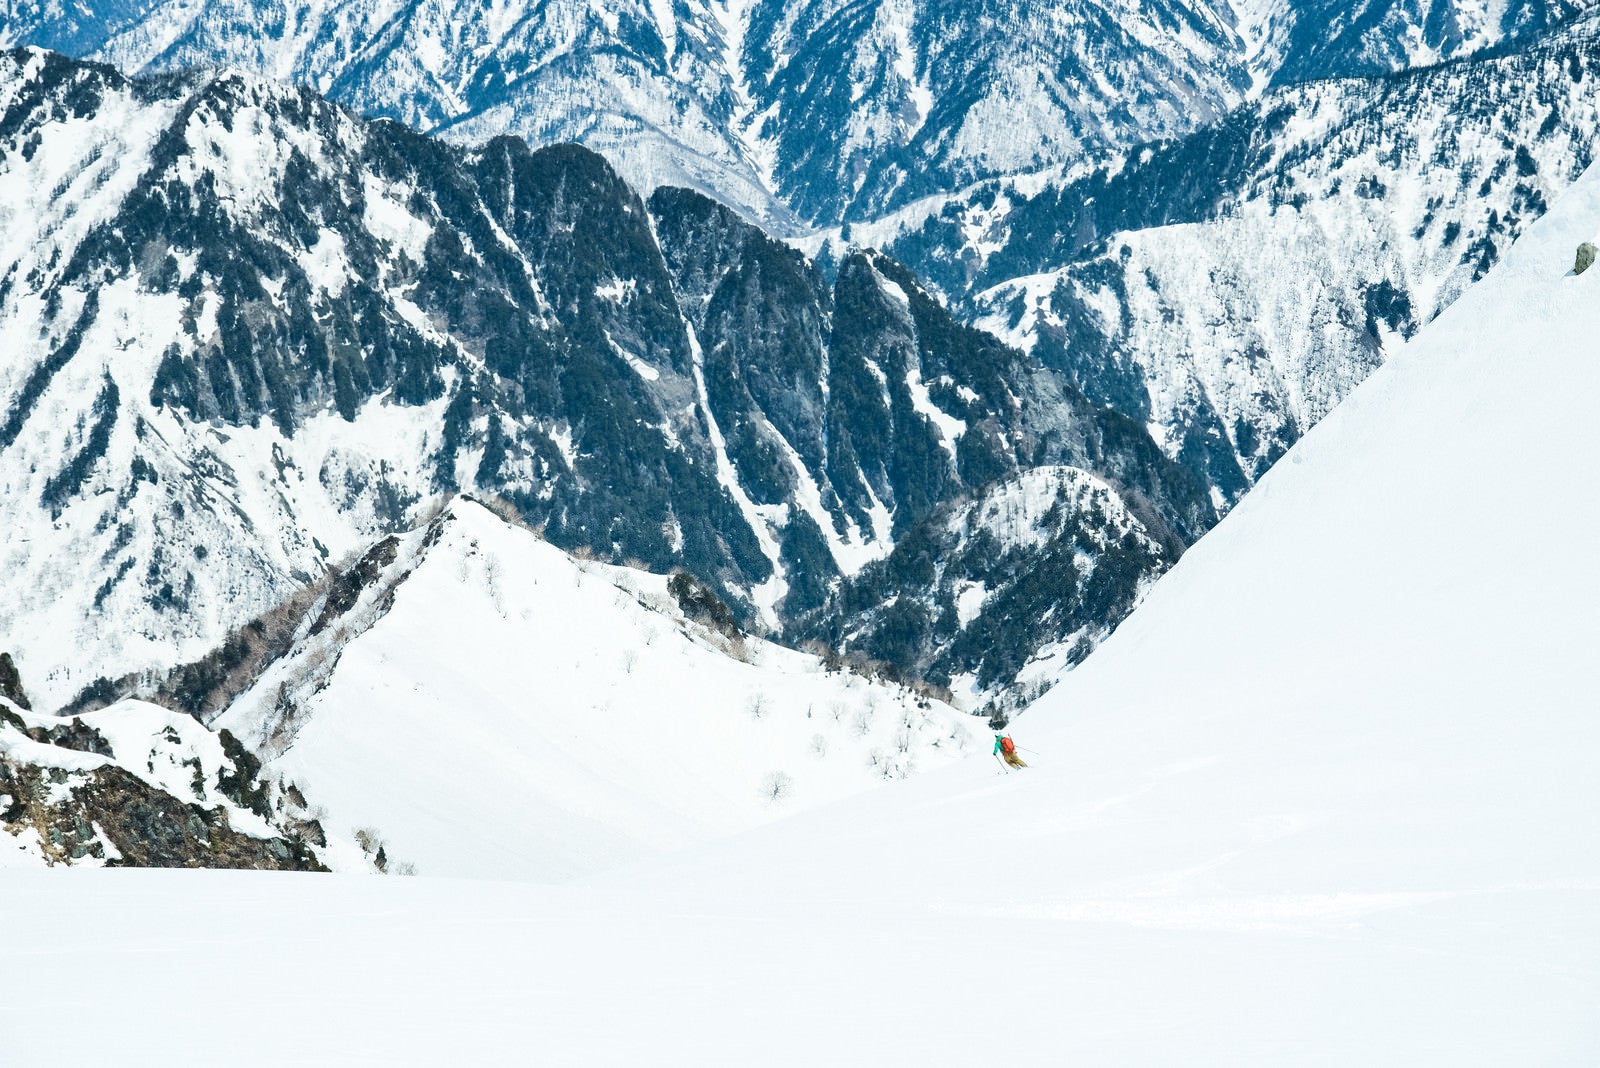 「大雪原を滑るスキーヤー」の写真